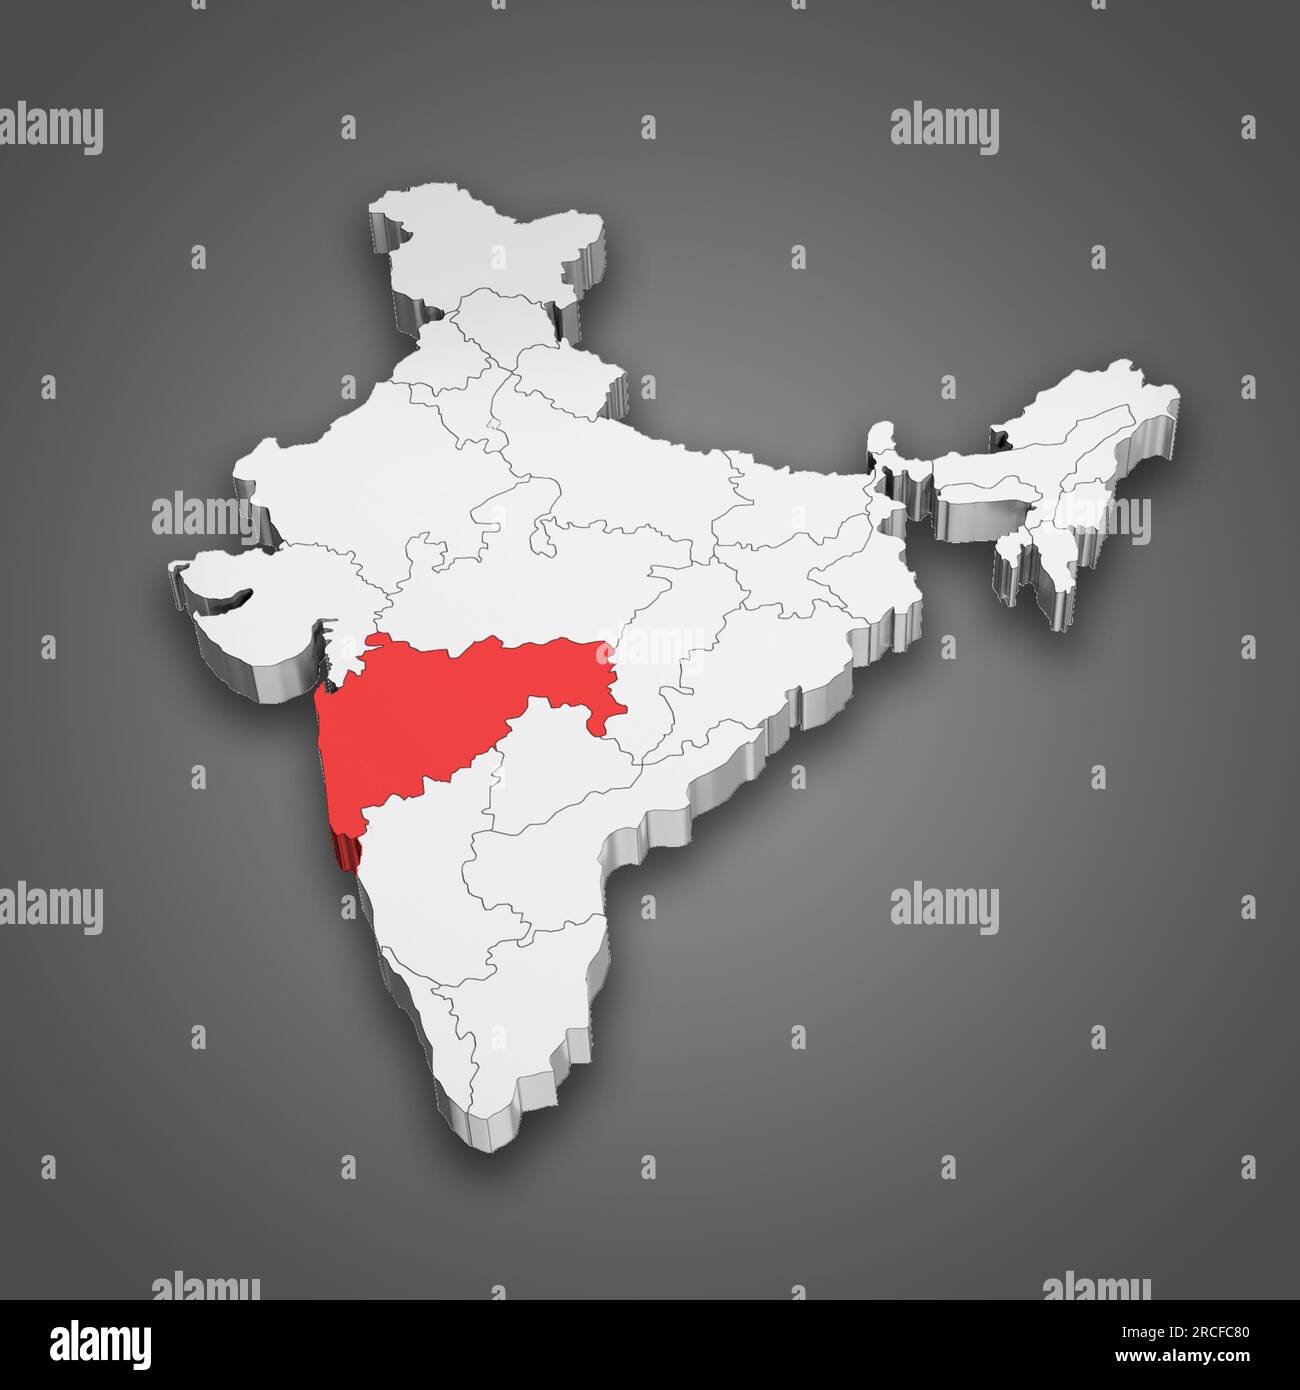 Localisation de l'état du Maharashtra dans la carte de l'Inde. Illustration 3D. Banque D'Images